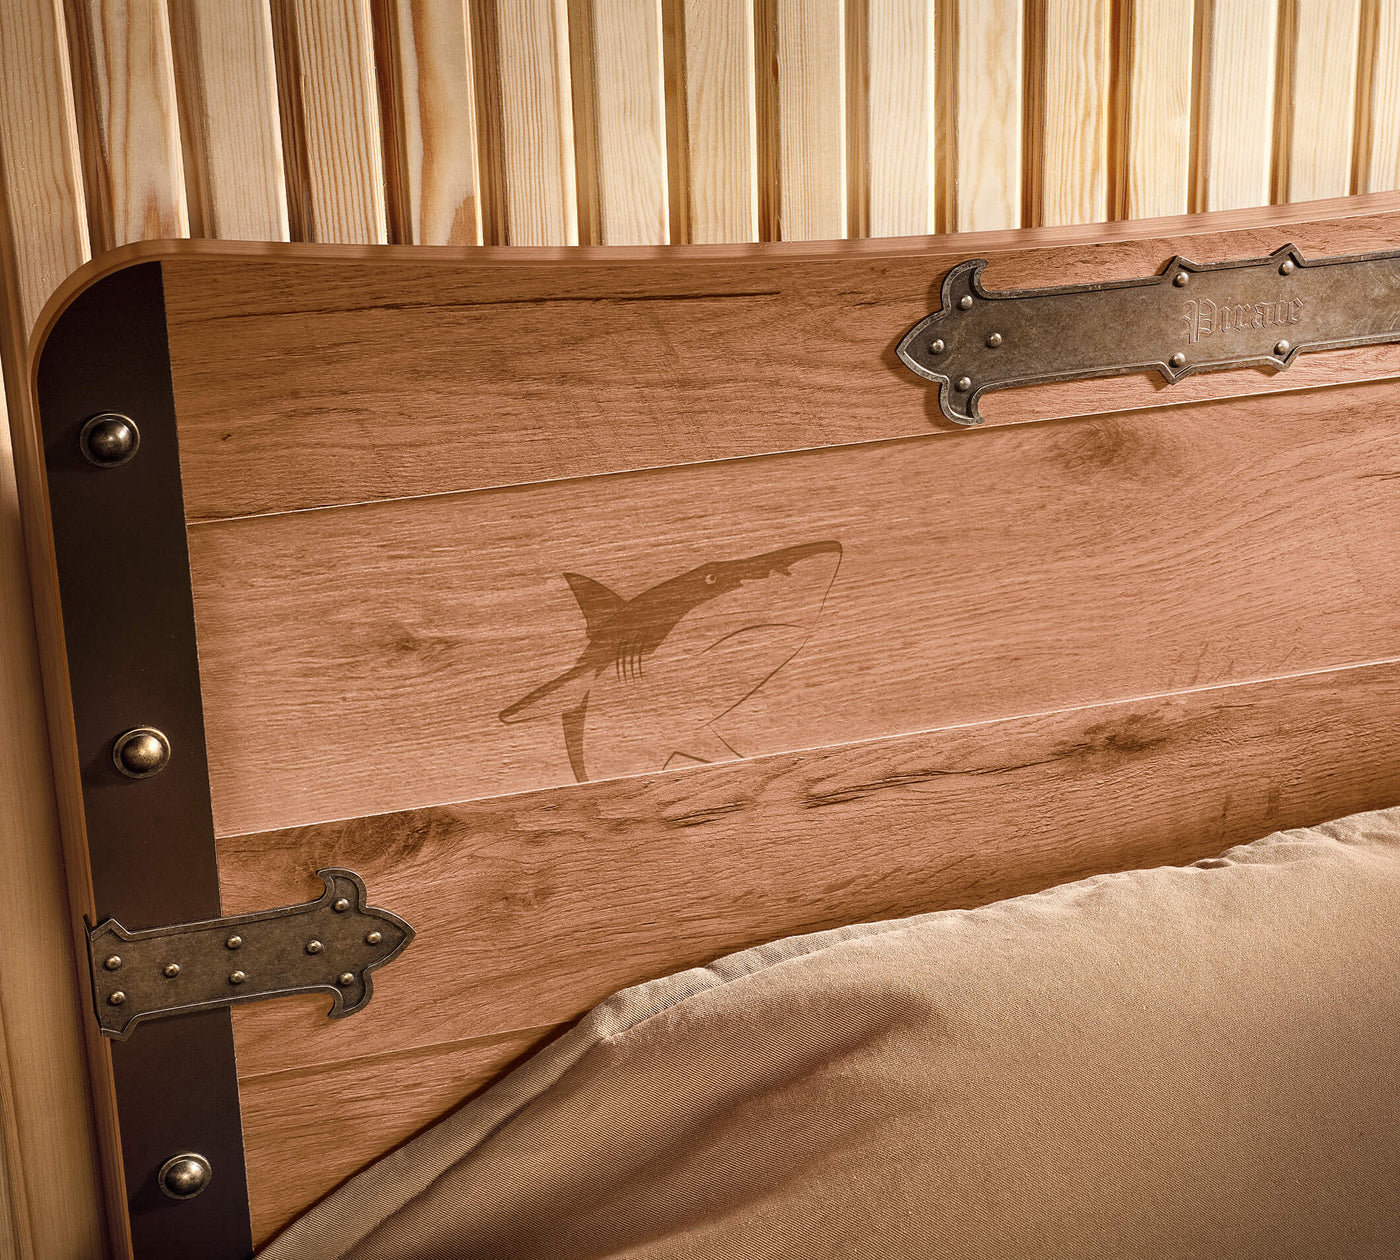 Pirate Bed [120x200 Cm]